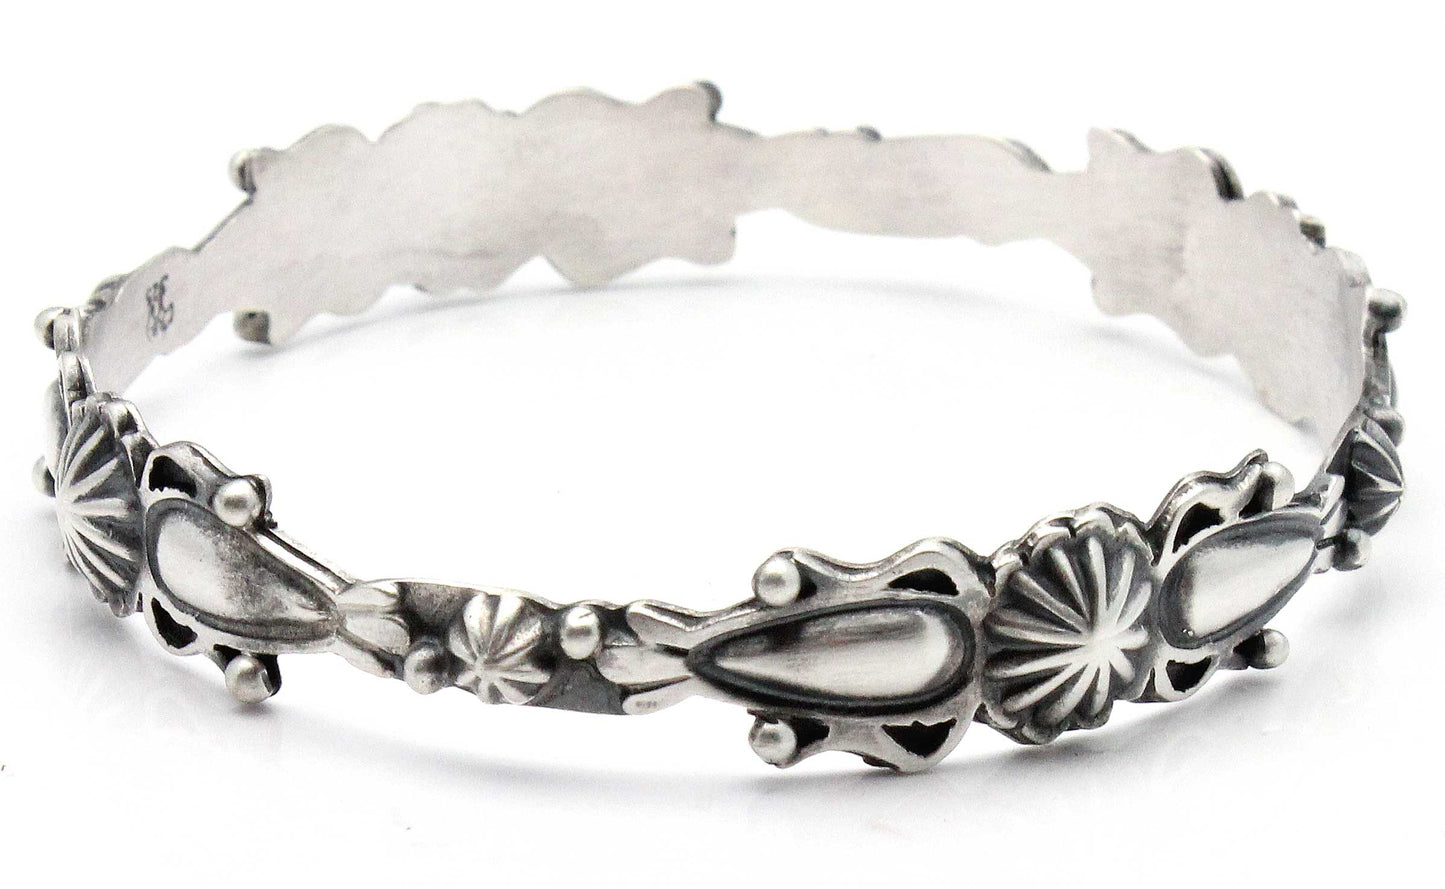 Navajo Silver Bangle Bracelet